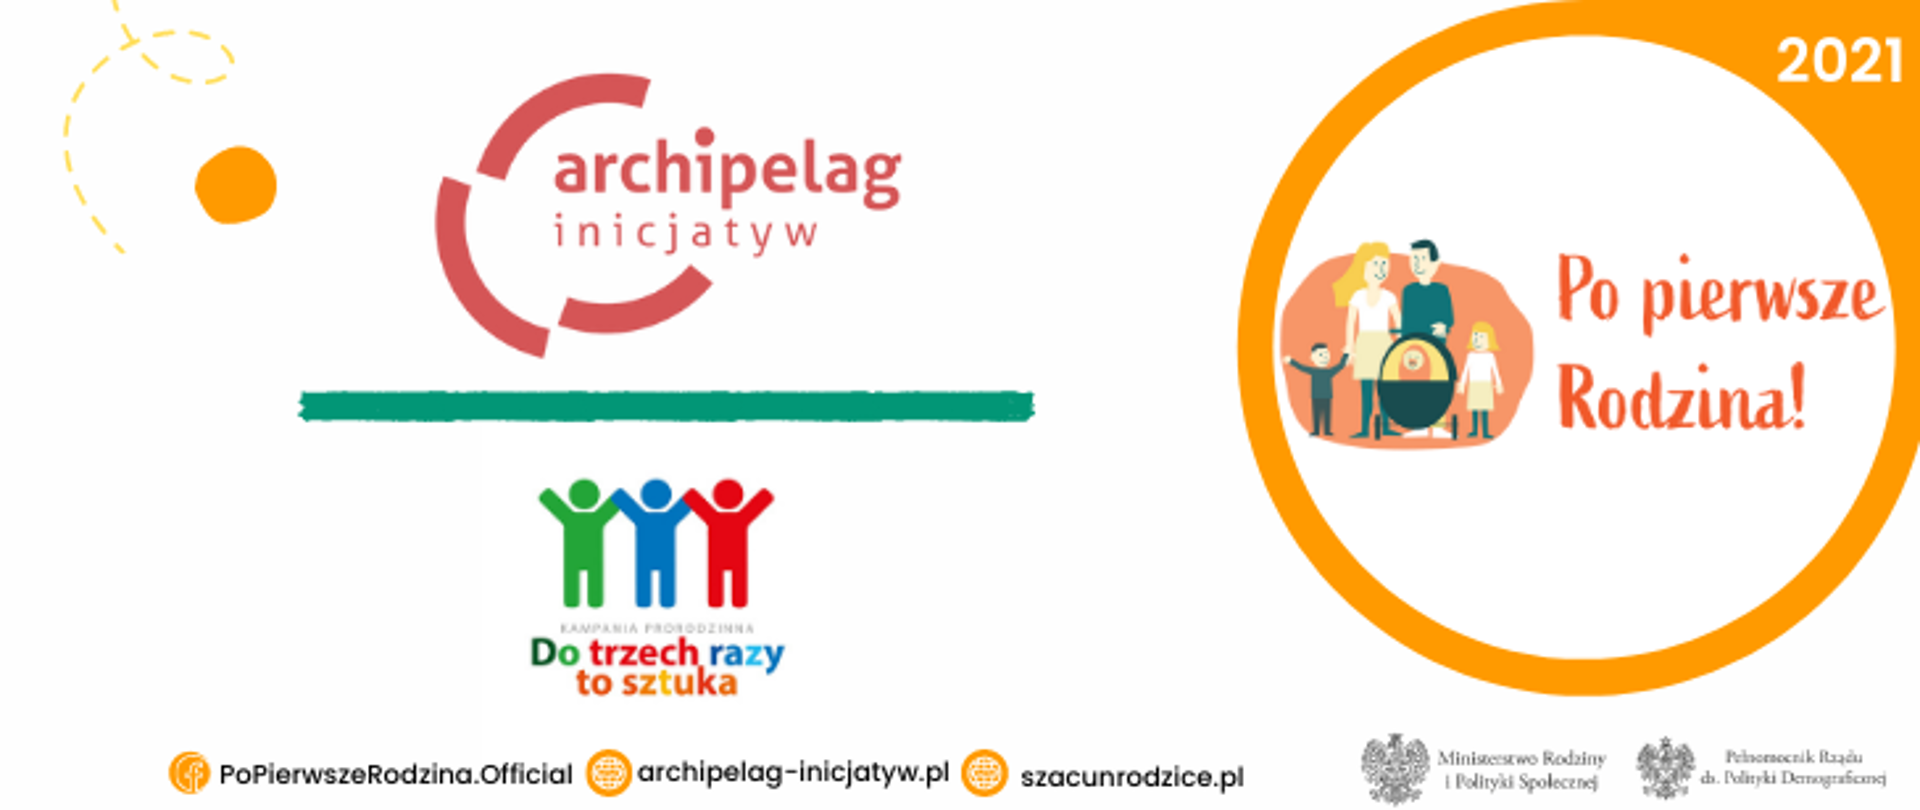 PPR2021_Archipelag Inicjatyw